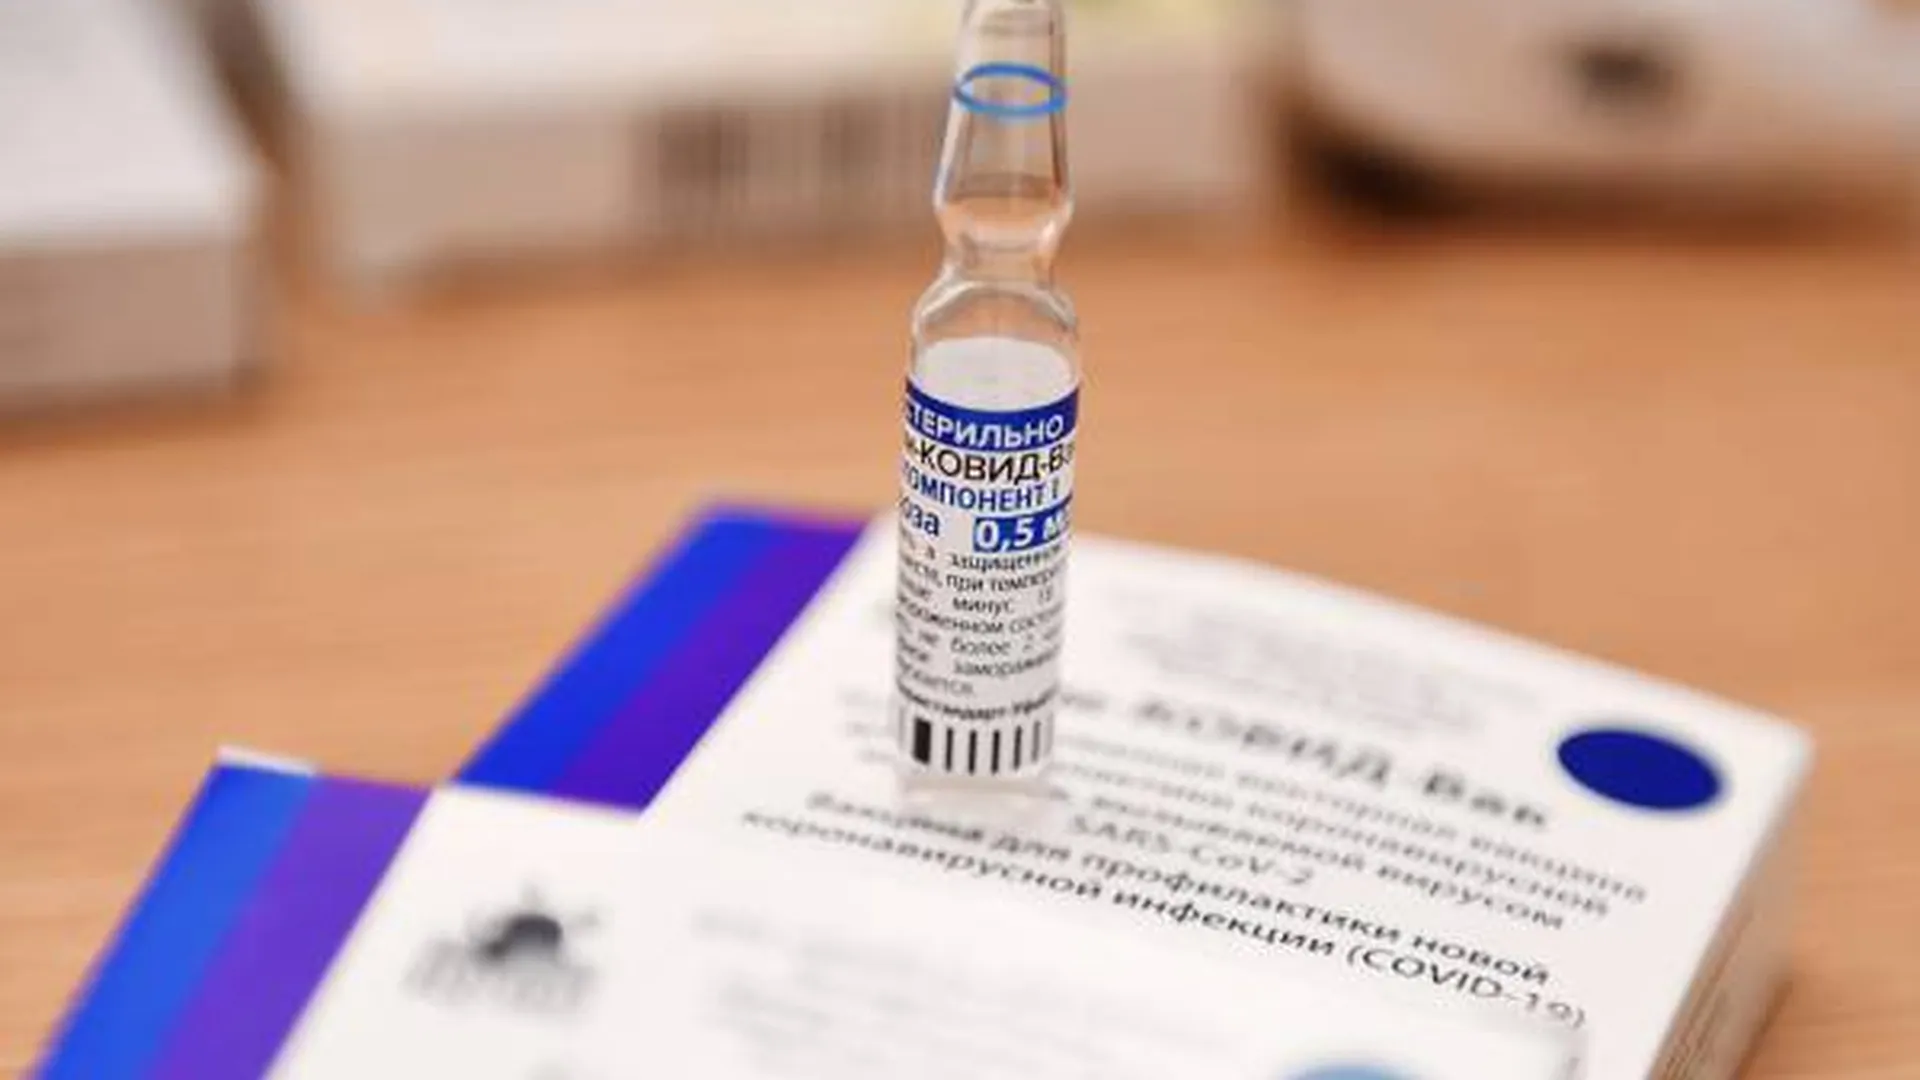 Информация о просроченных вакцинах в московских поликлиниках не подтвердилась